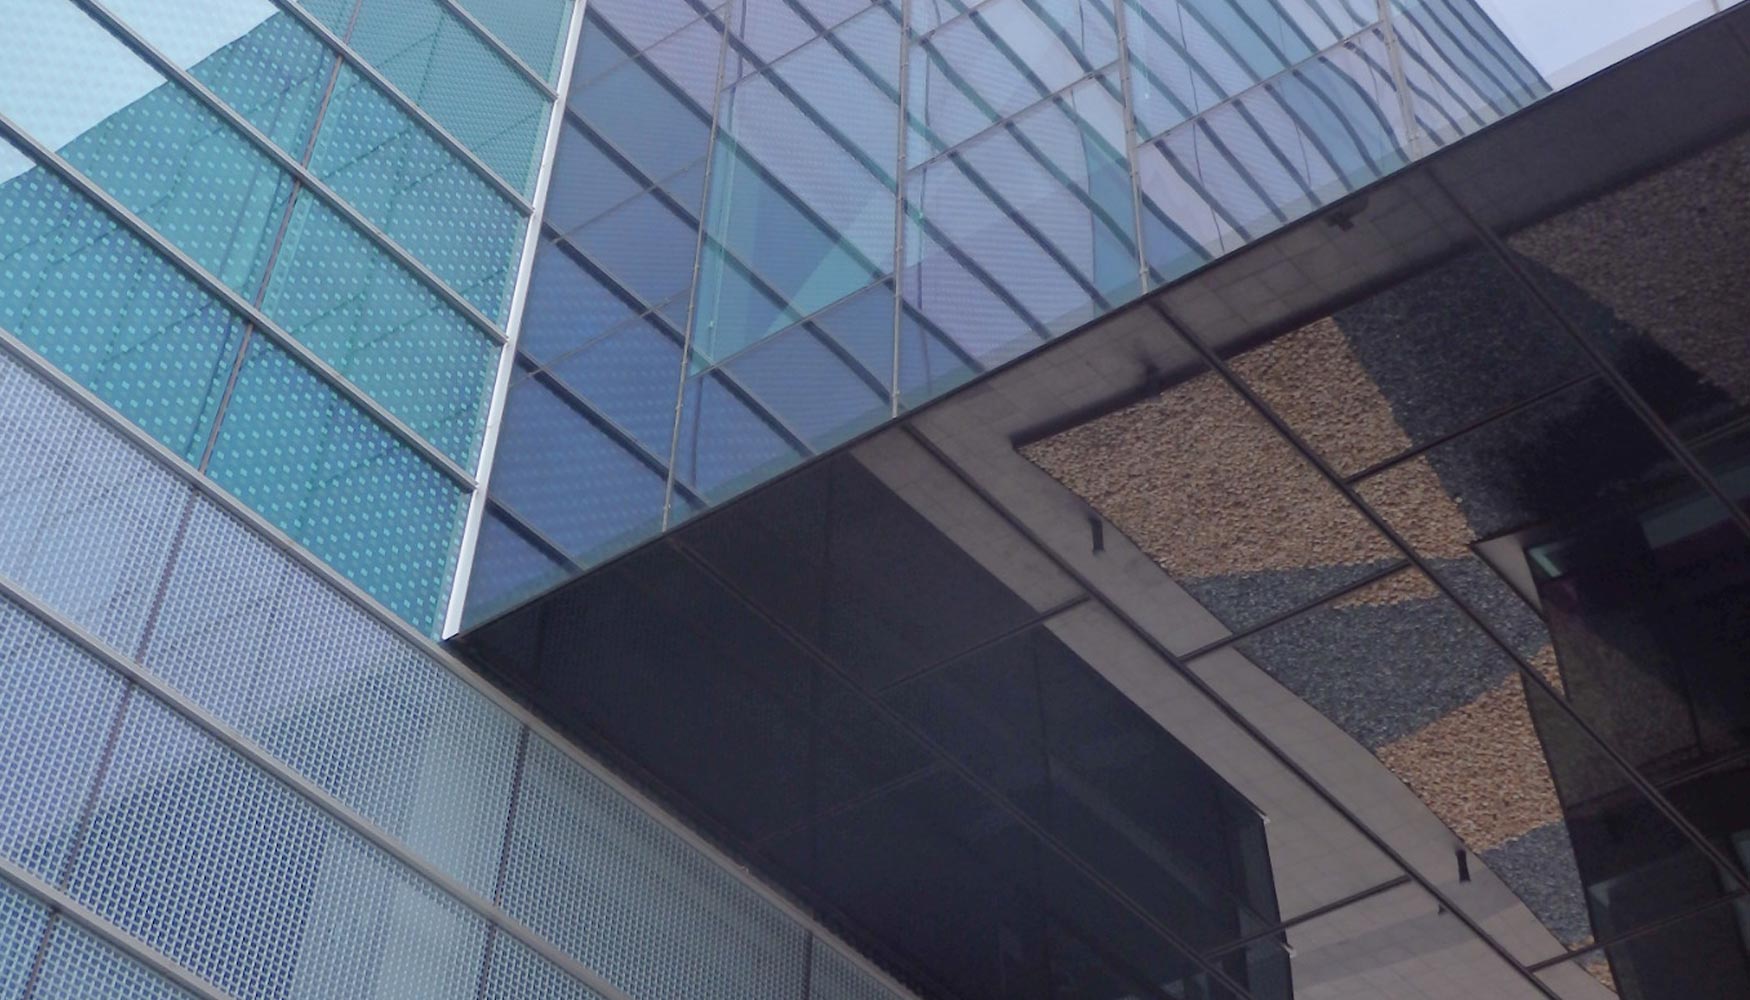 Detalle de la conexin de ambos edificios. A la izquierda, se aprecian las serigrafas del edificio de Arata Isozaki